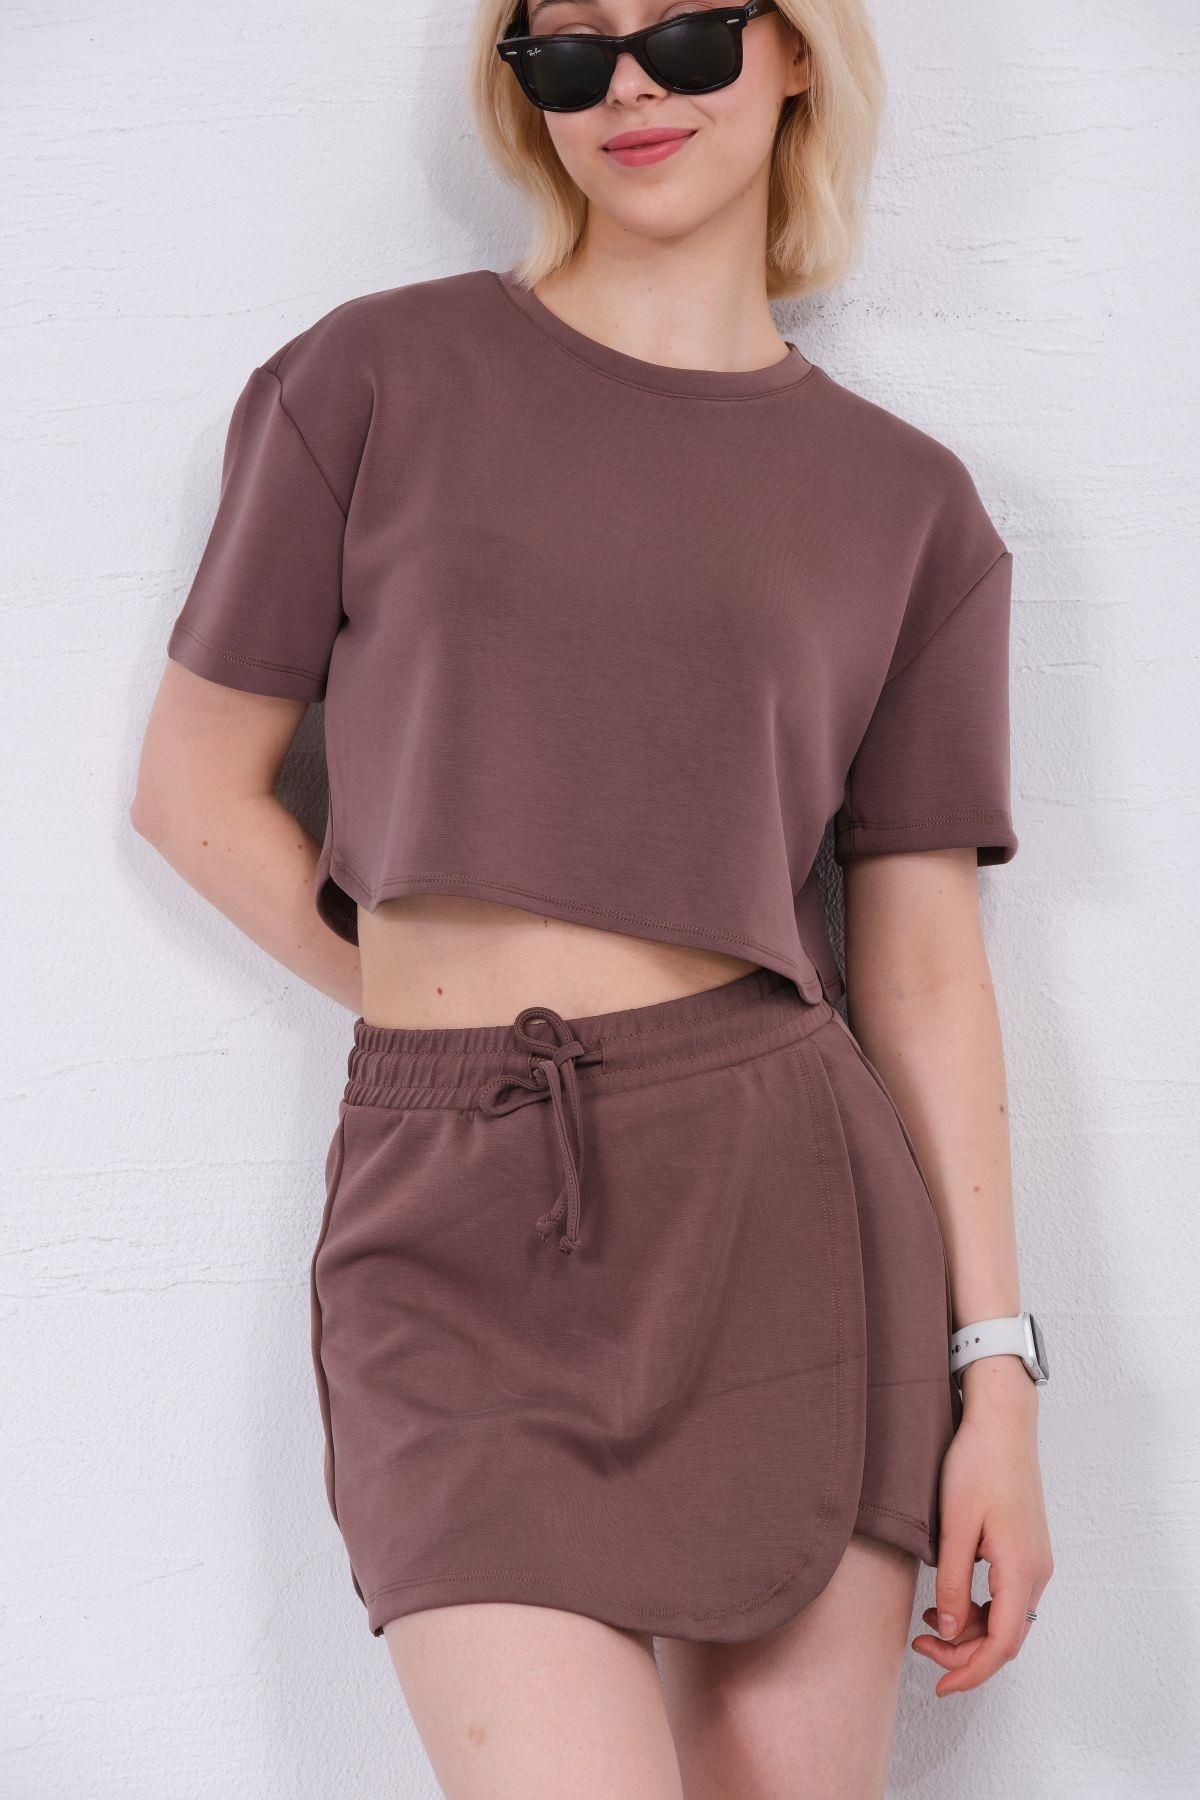 Domoda Ultra Yumuşak Dokunuş: Modal Crop Top Serisi Kadın Tişört @Savona